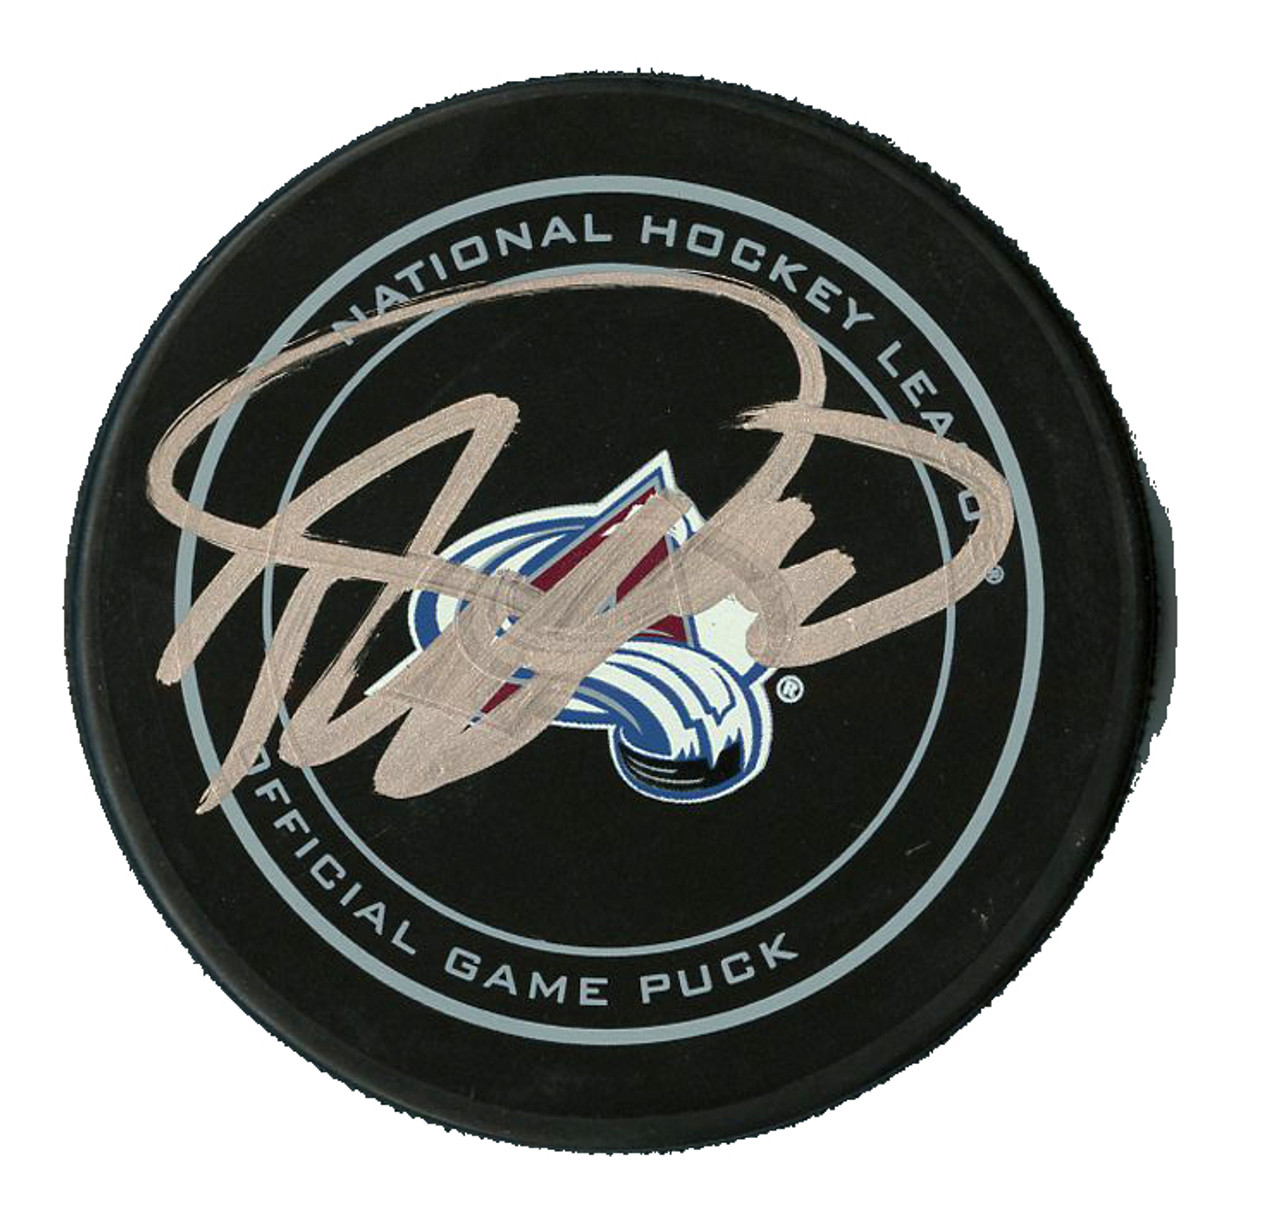 Colorado Avalanche Autographed Memorabilia, Signed Hockey Pucks